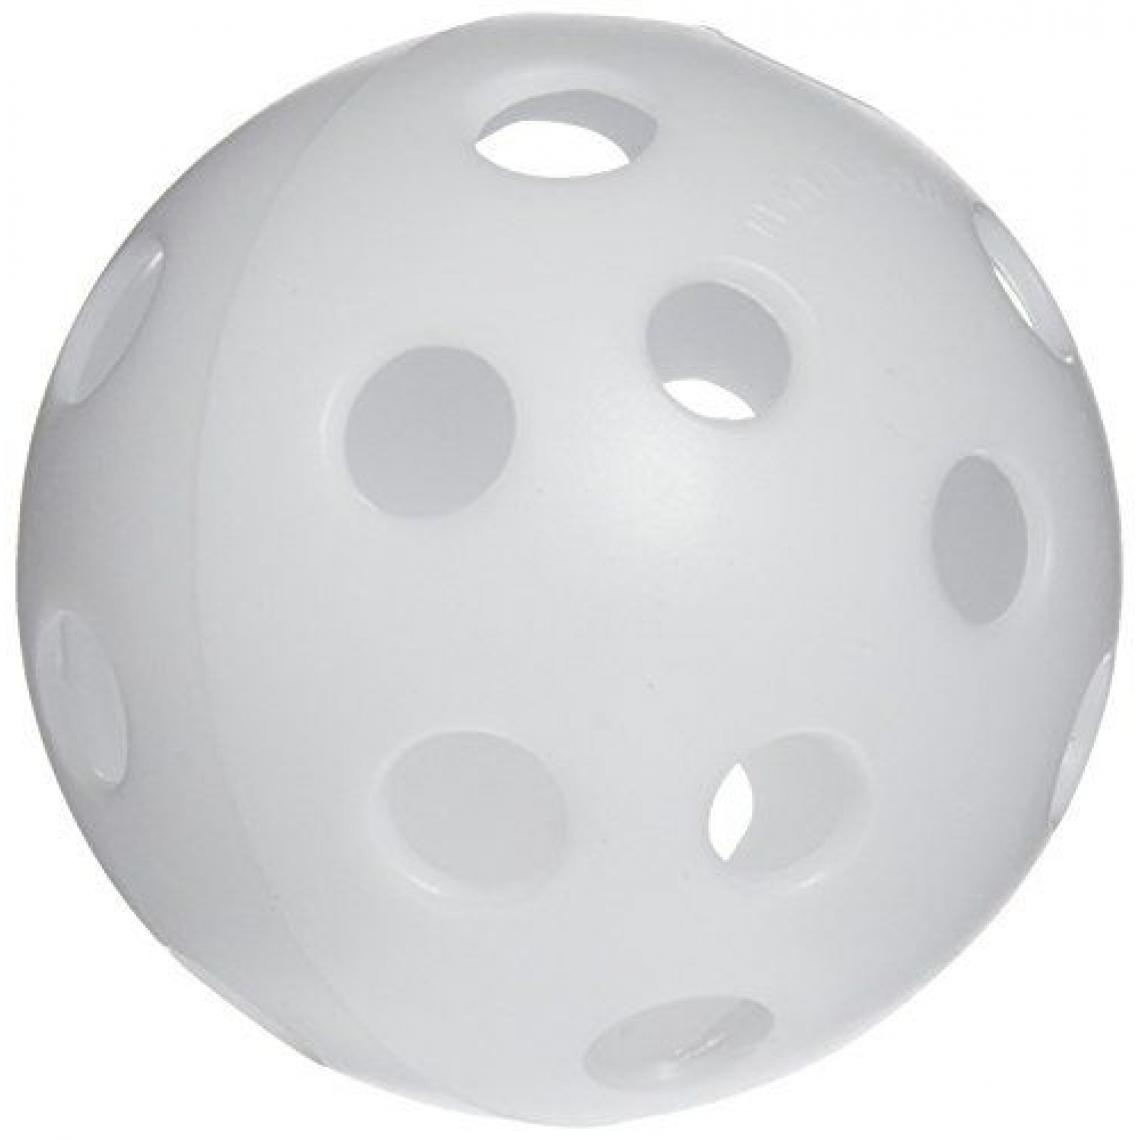 Inconnu - Softee 11142-11142 - Ballon - Unisex - Taille: Unique - Multicolore - Jeux de balles